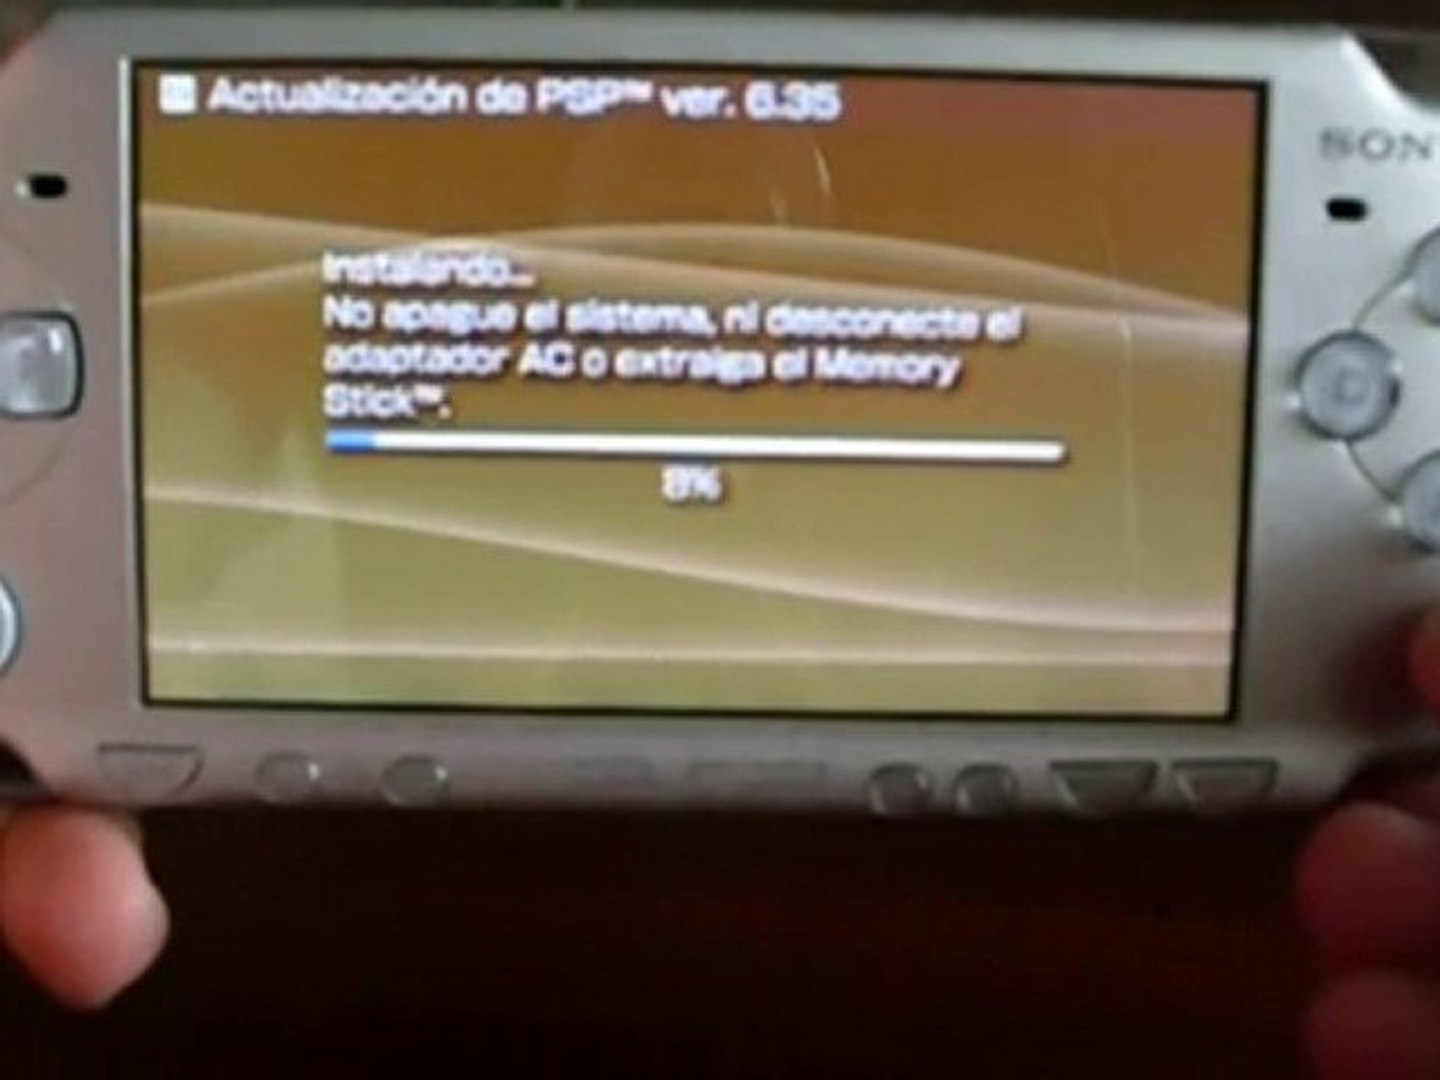 Actualización firmware 6.35 para PSP - Vídeo Dailymotion